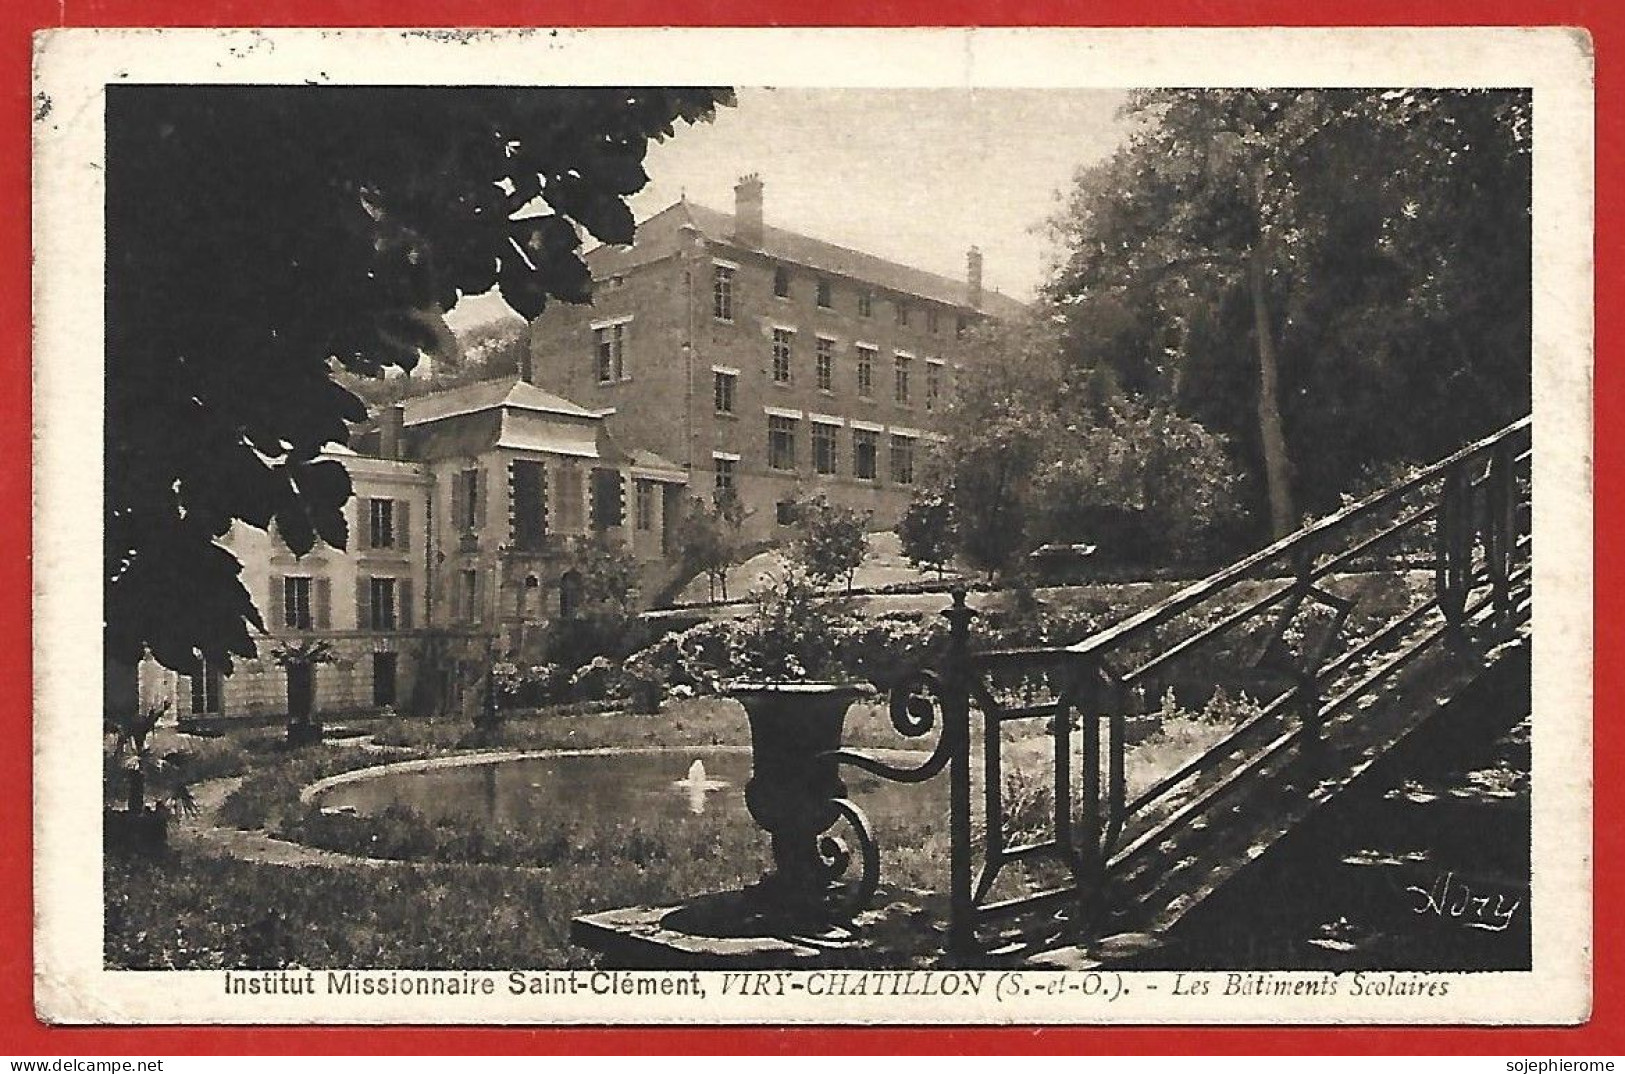 Viry-Châtillon (91) Institut Missionnaire Saint-Clément Les Bâtiments Scolaires 2scans 16-11-1930 - Viry-Châtillon